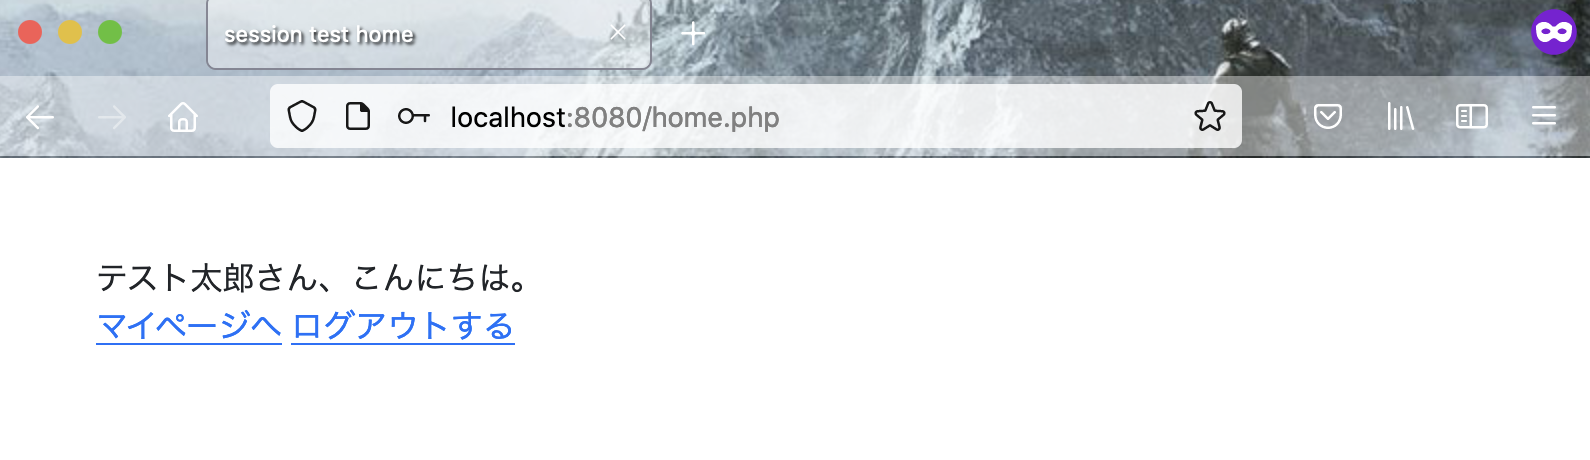 PHPのセッション確認・ホーム画面